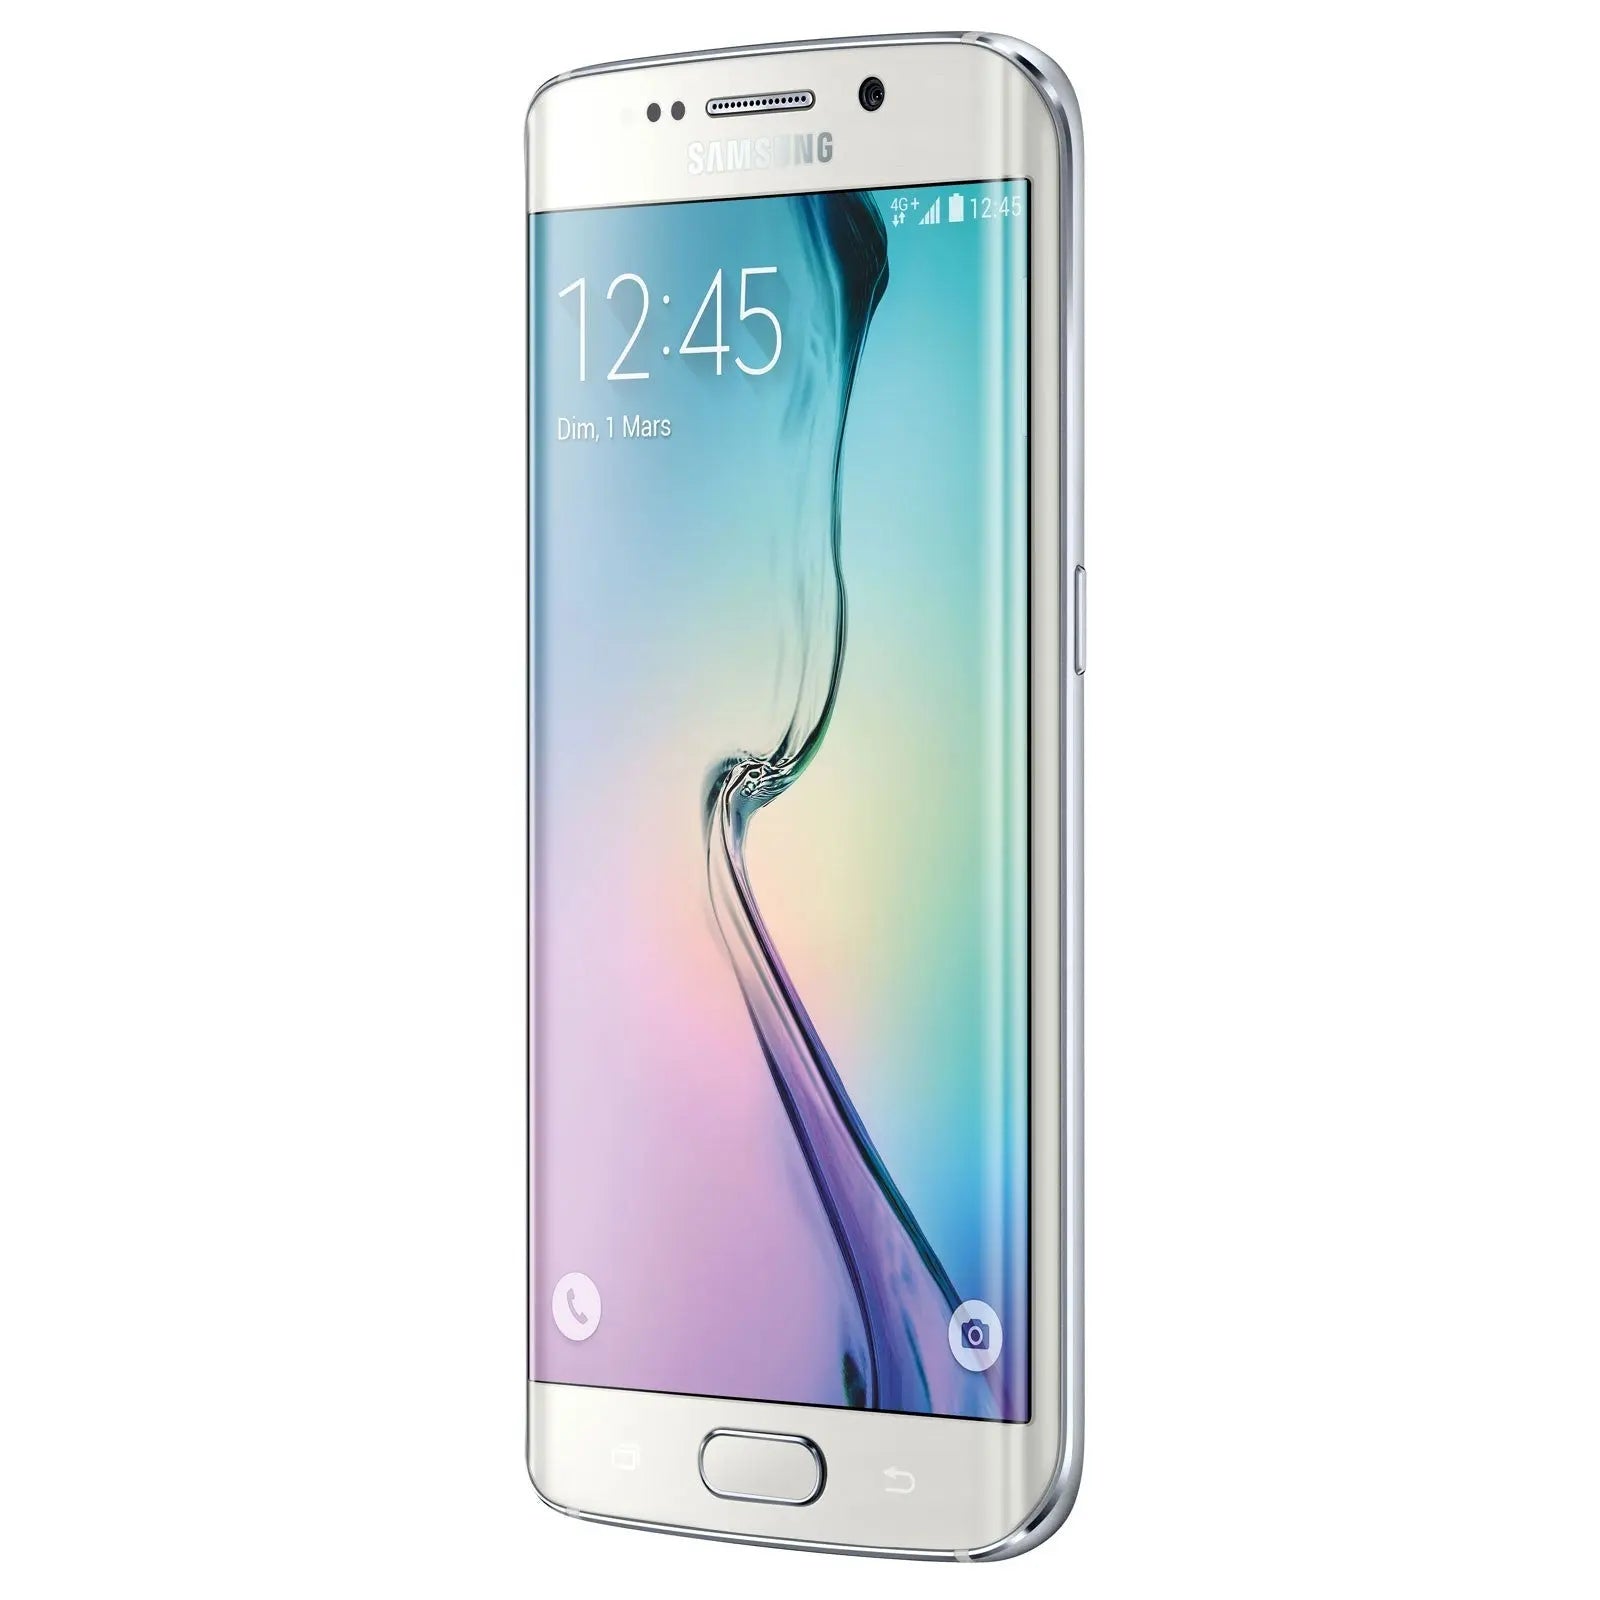 Samsung Galaxy S6 Edge SM-G925F Blanc 32 Go Samsung